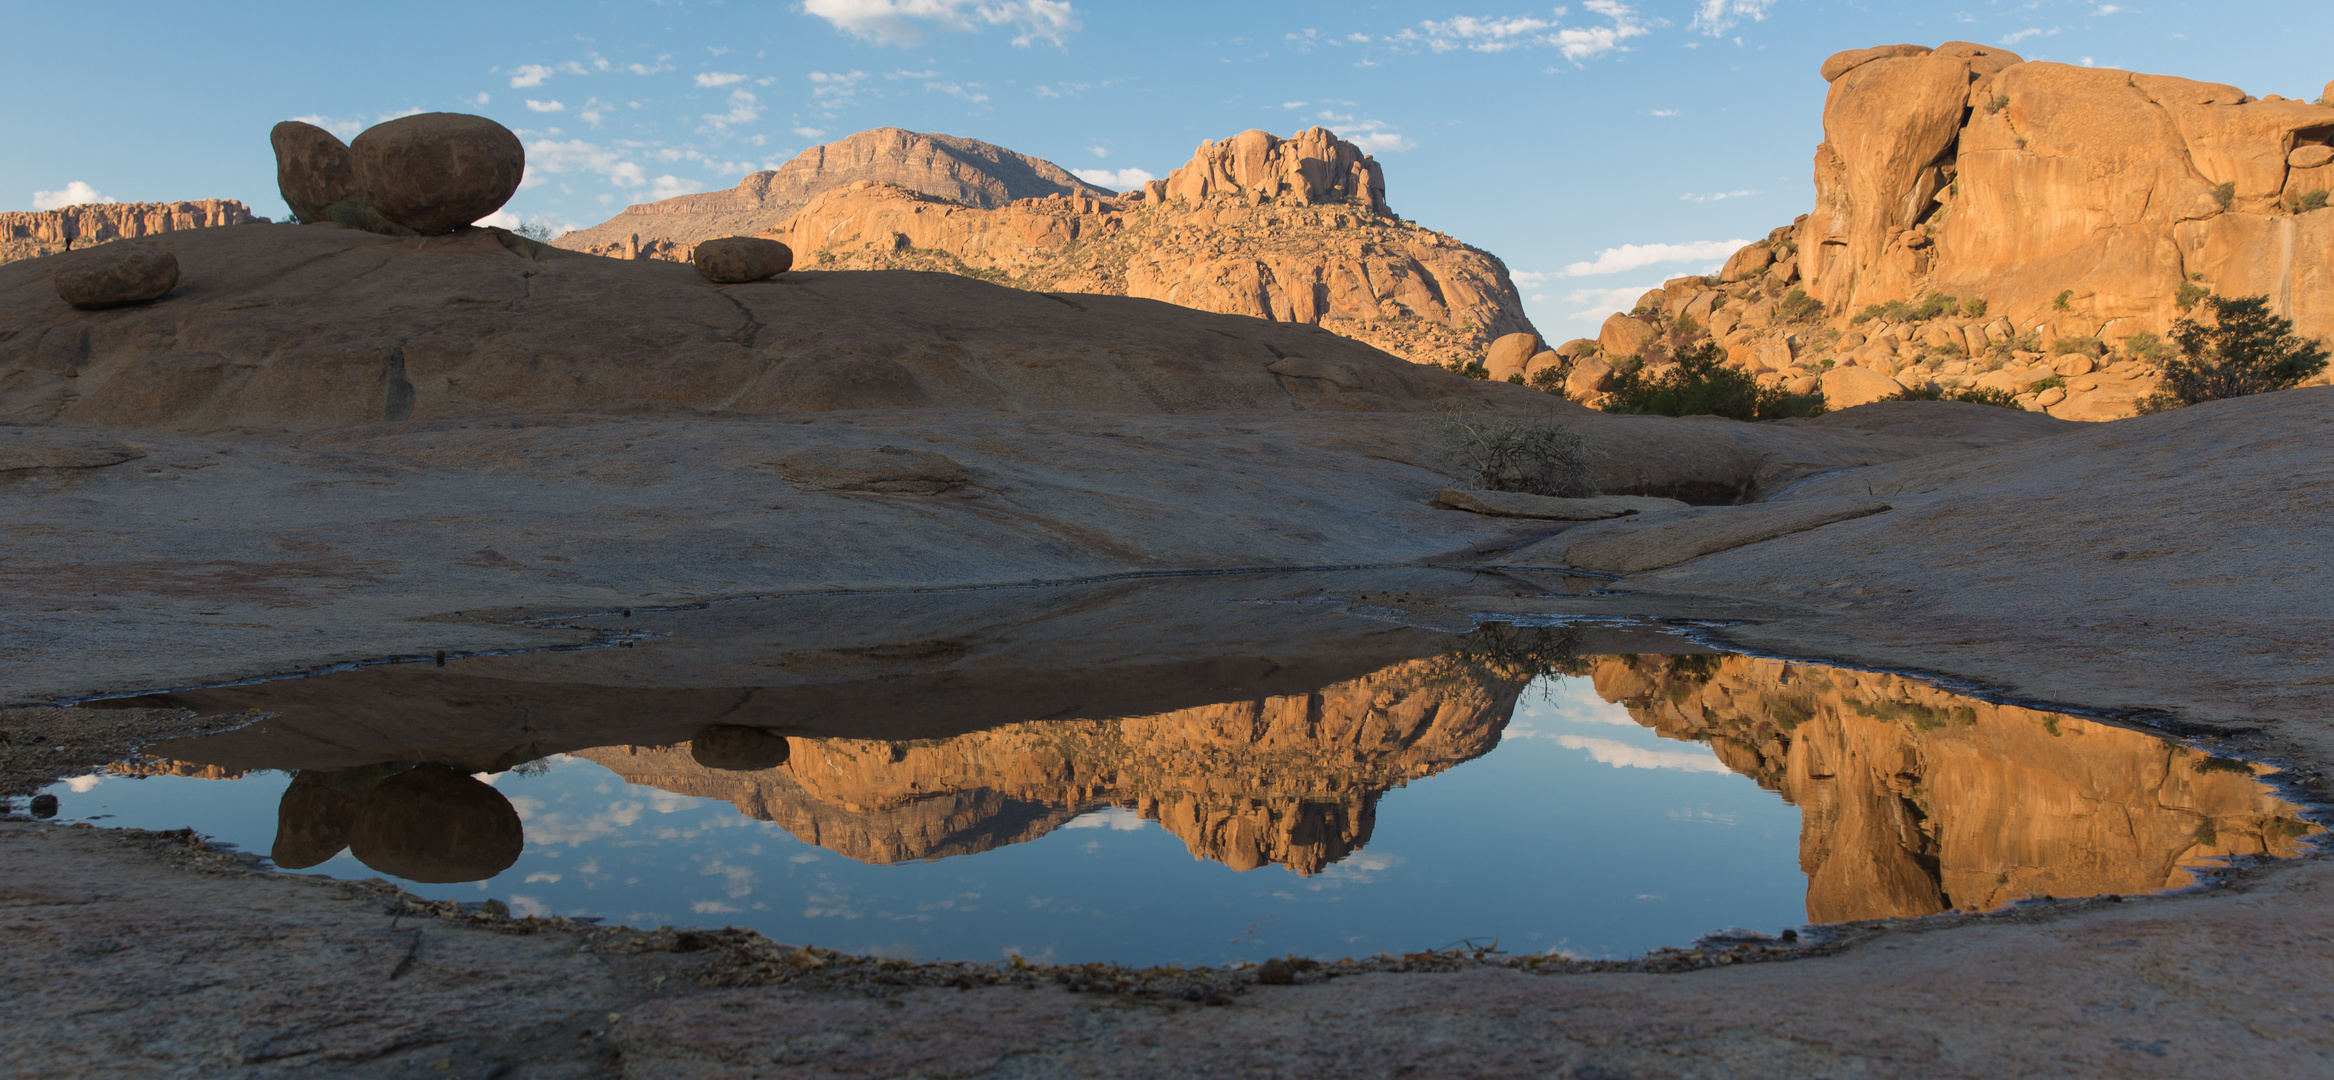 Wasserspiegelung im Erongogebirge, Namibia